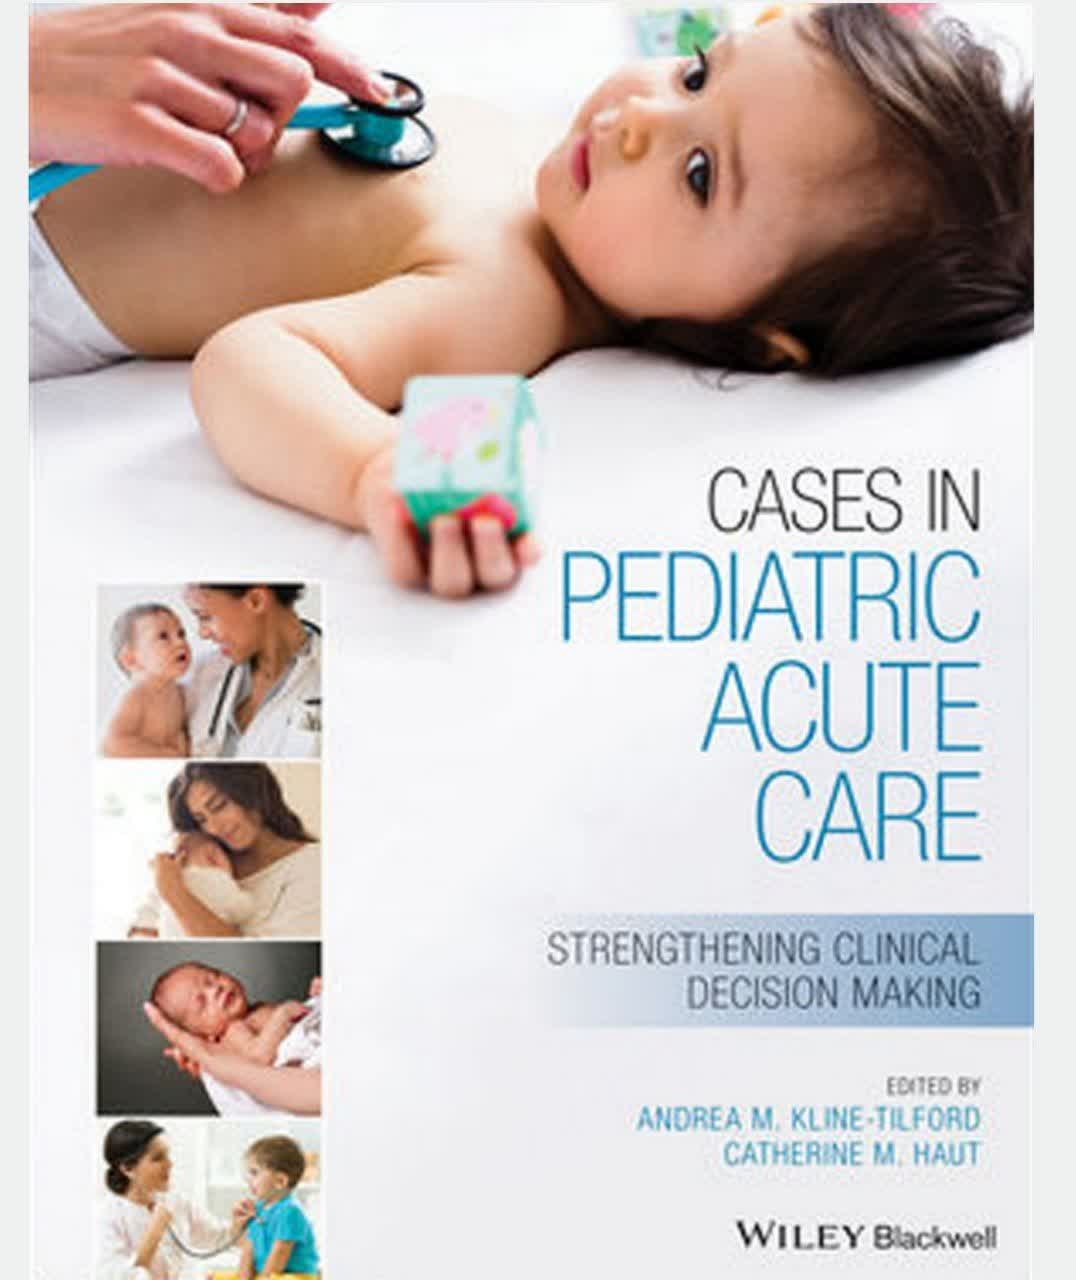 Cases in Pediatric Acute Care - کیس های اطفال در شرایط حاد